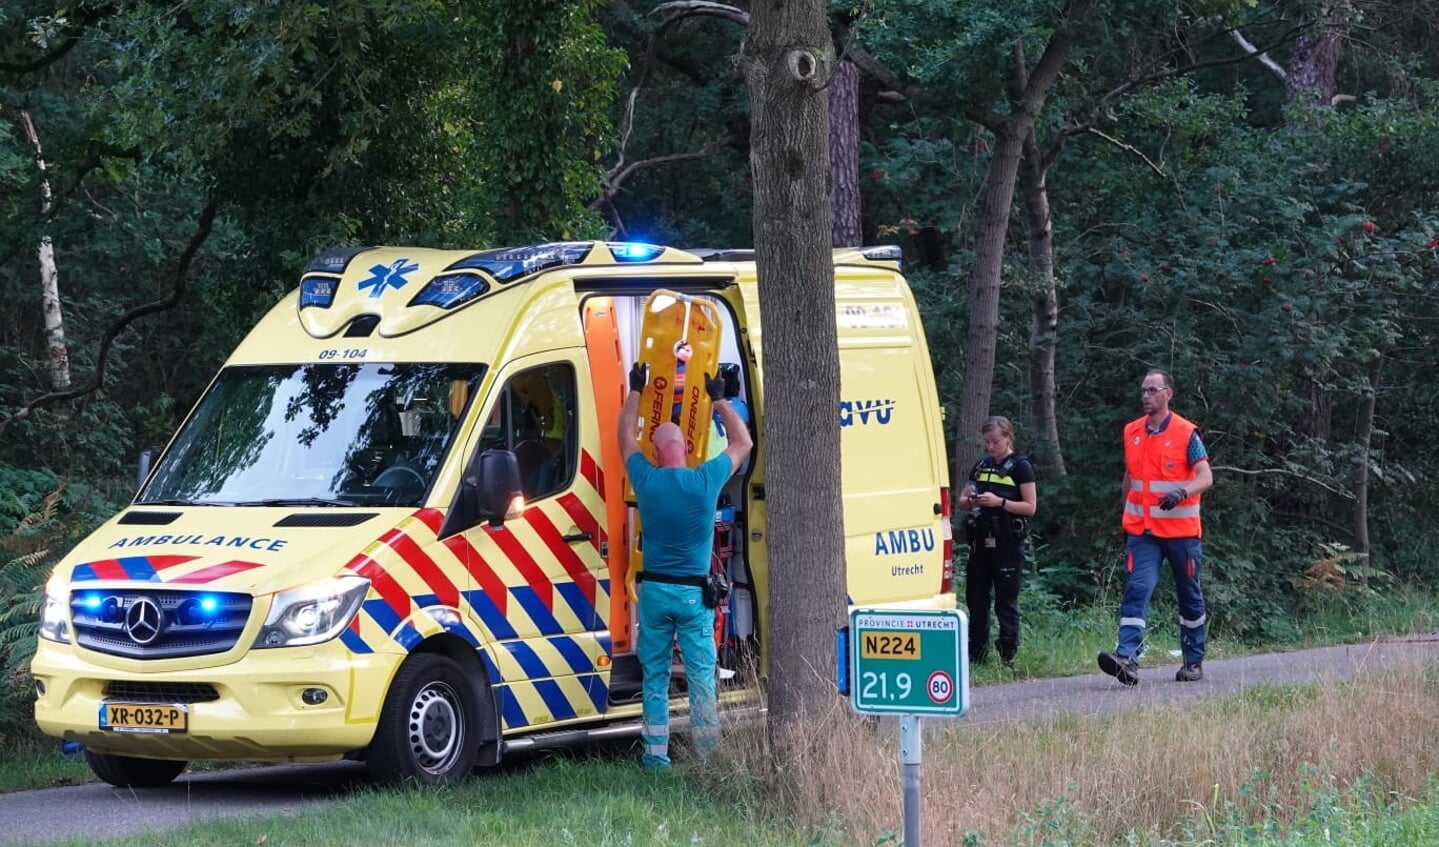 Bij een aanrijding zaterdagavond op de Utrechtseweg (N224) tussen Renswoude en Scherpenzeel is een wielrenster zwaargewond geraakt.